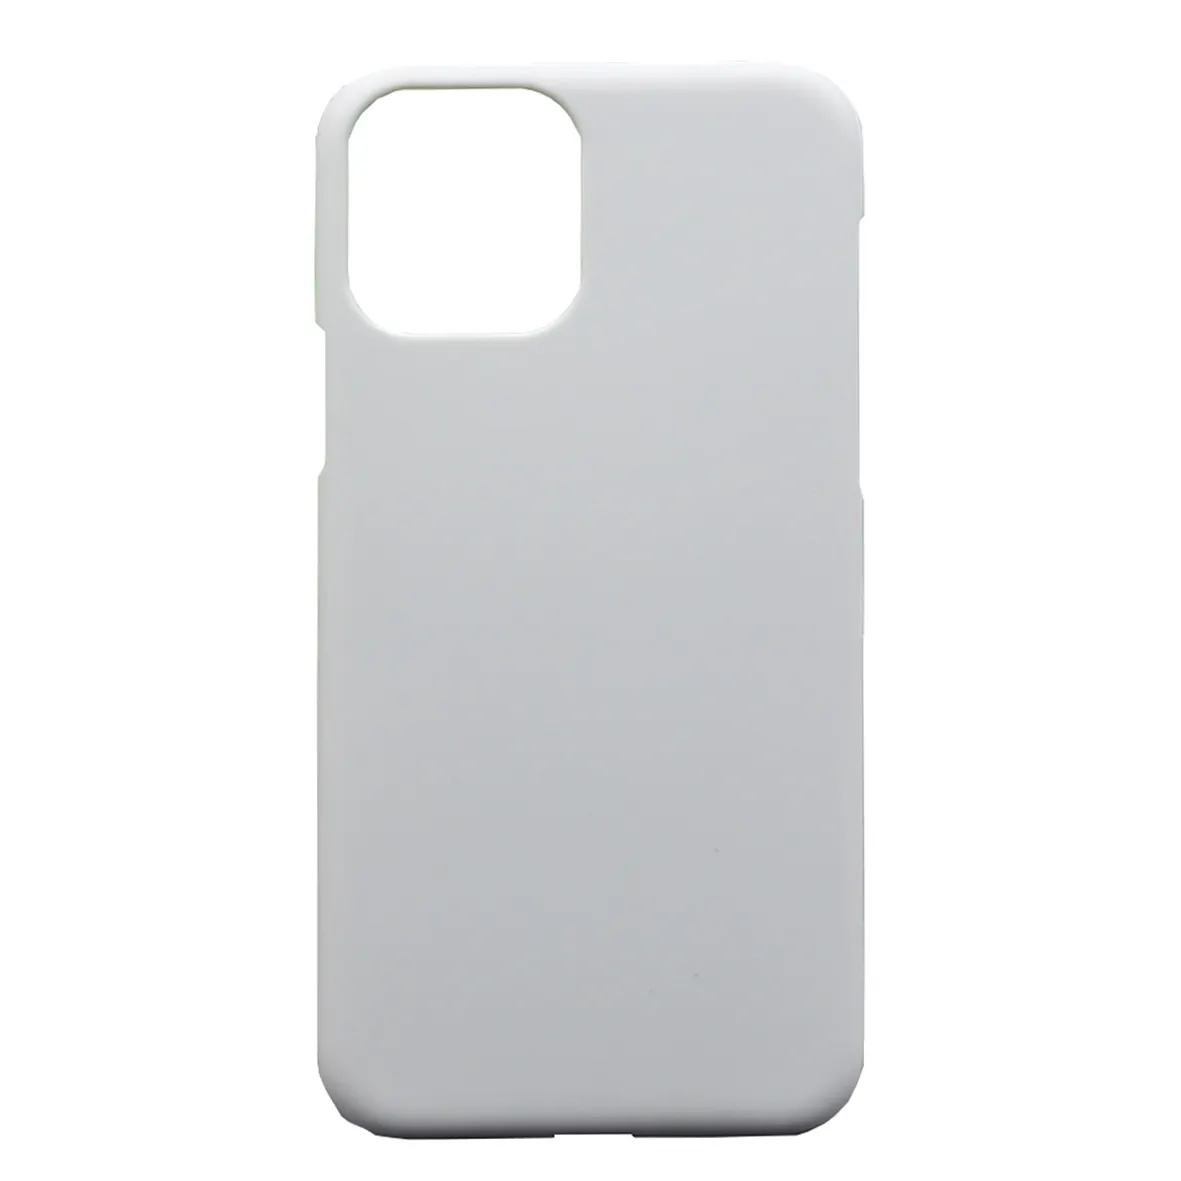 3D 승화 케이스 사용자 정의 승화 블랭크 iPhone 14 13 12 11 시리즈 케이스 용 휴대폰 케이스 커버